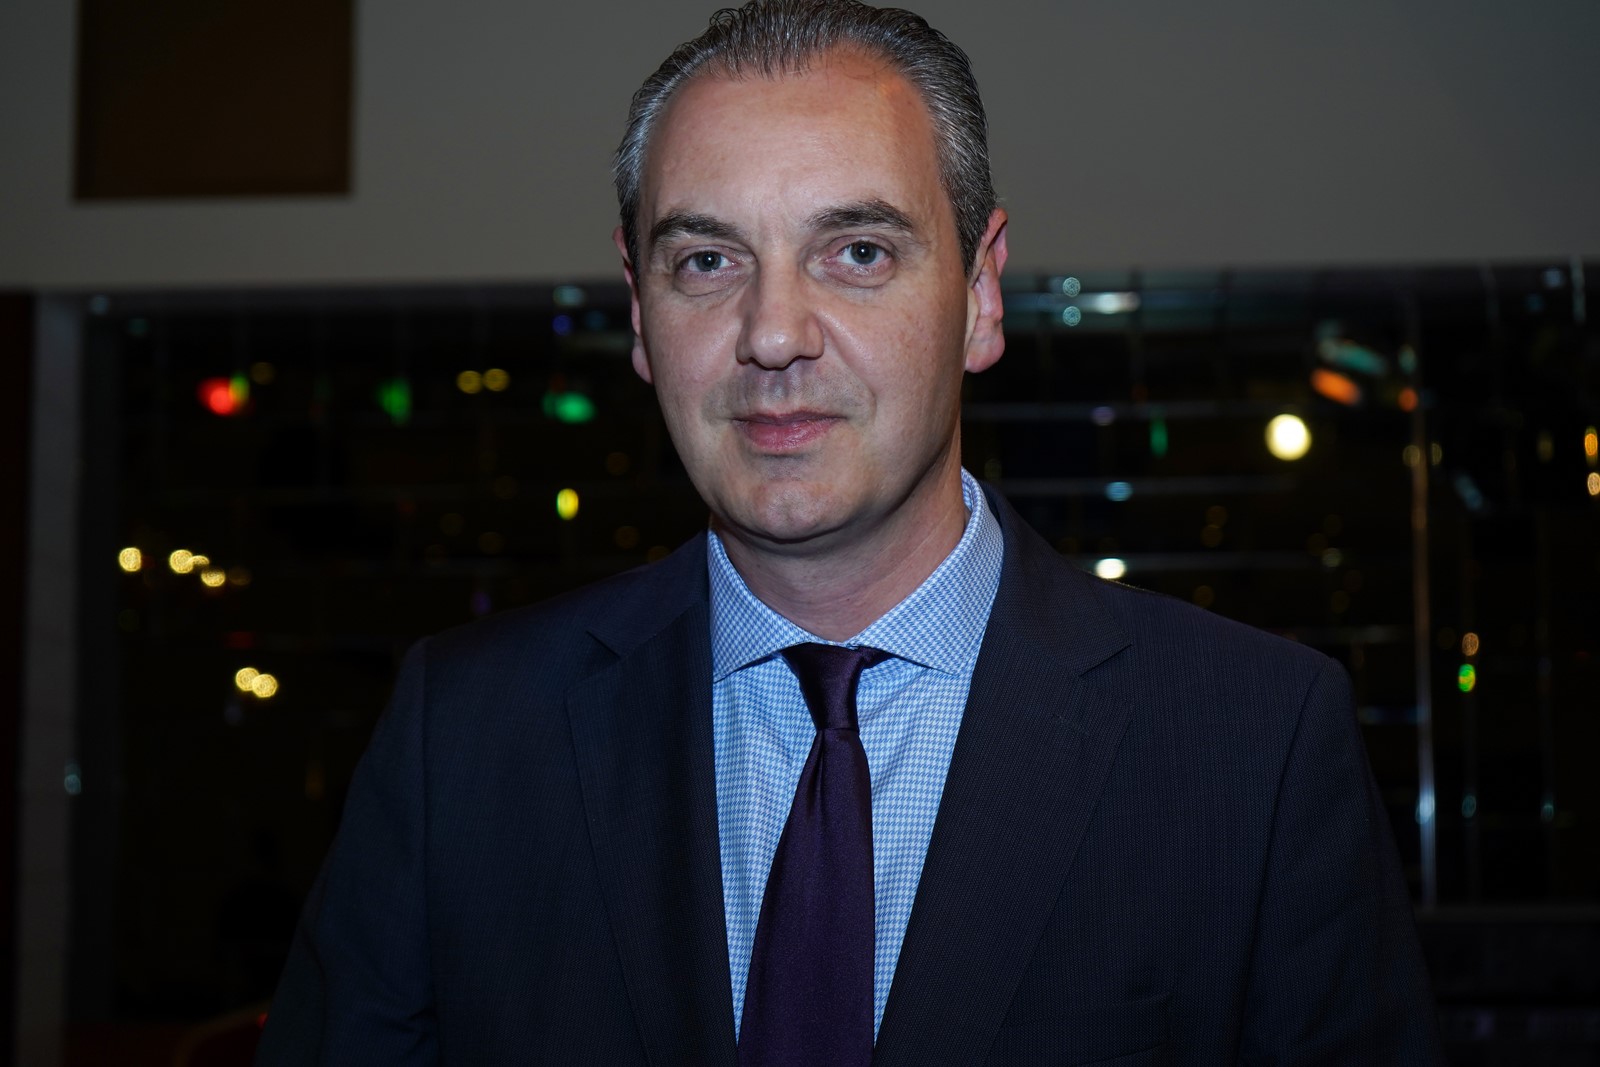 Υποψήφιος δήμαρχος Ελασσόνας ο δικηγόρος Νίκος Γάτσας με τη στήριξη της “Ολύμπου Πολιτεία”